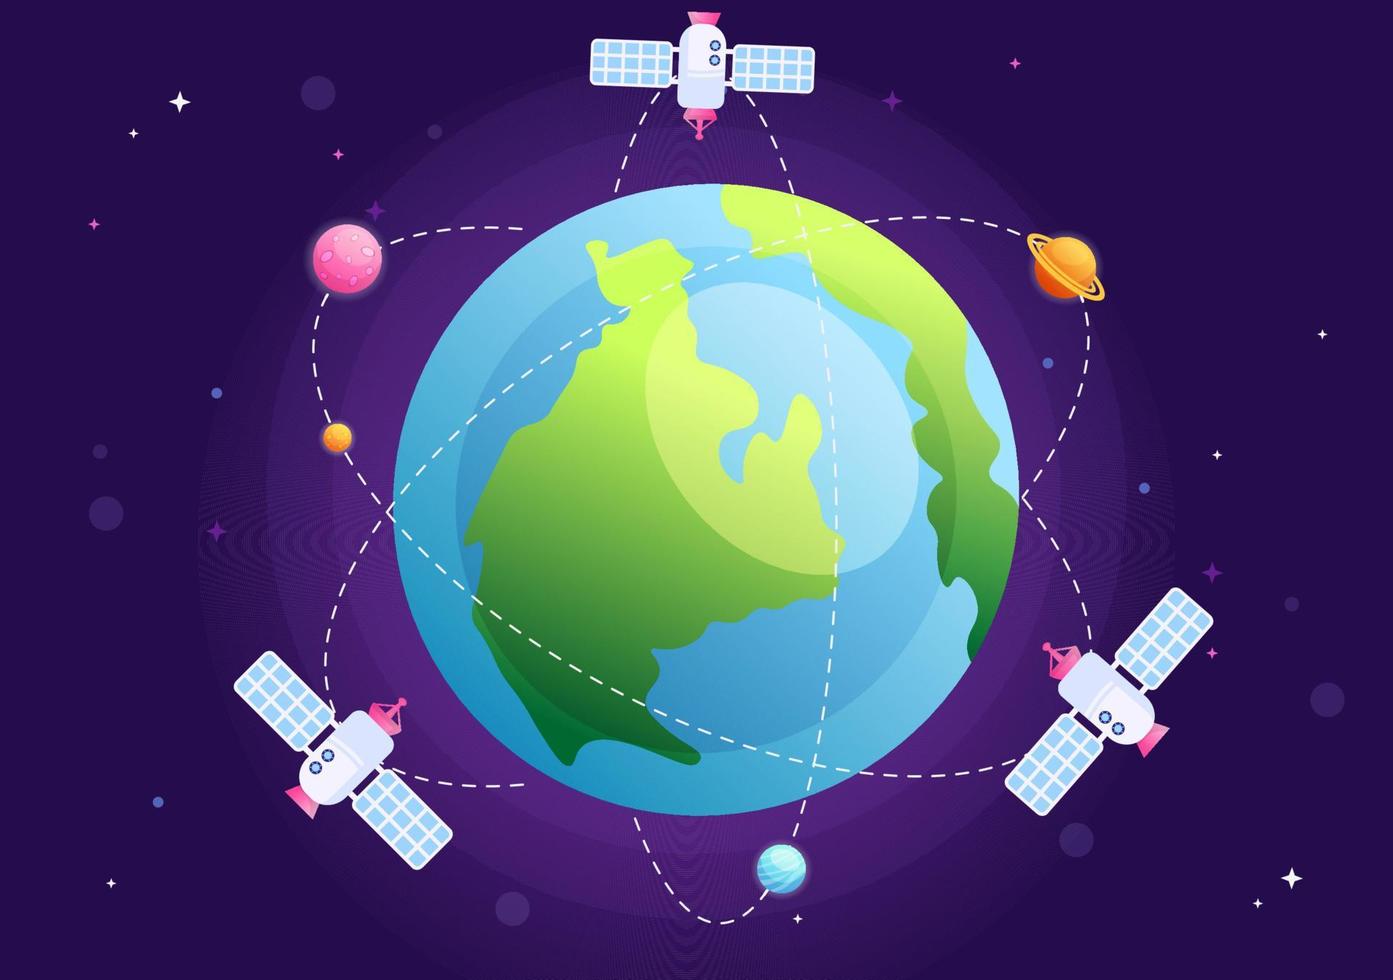 satélites artificiales que orbitan el planeta tierra con tecnología inalámbrica red global de internet 5g comunicación por satélite en ilustración de fondo plano vector